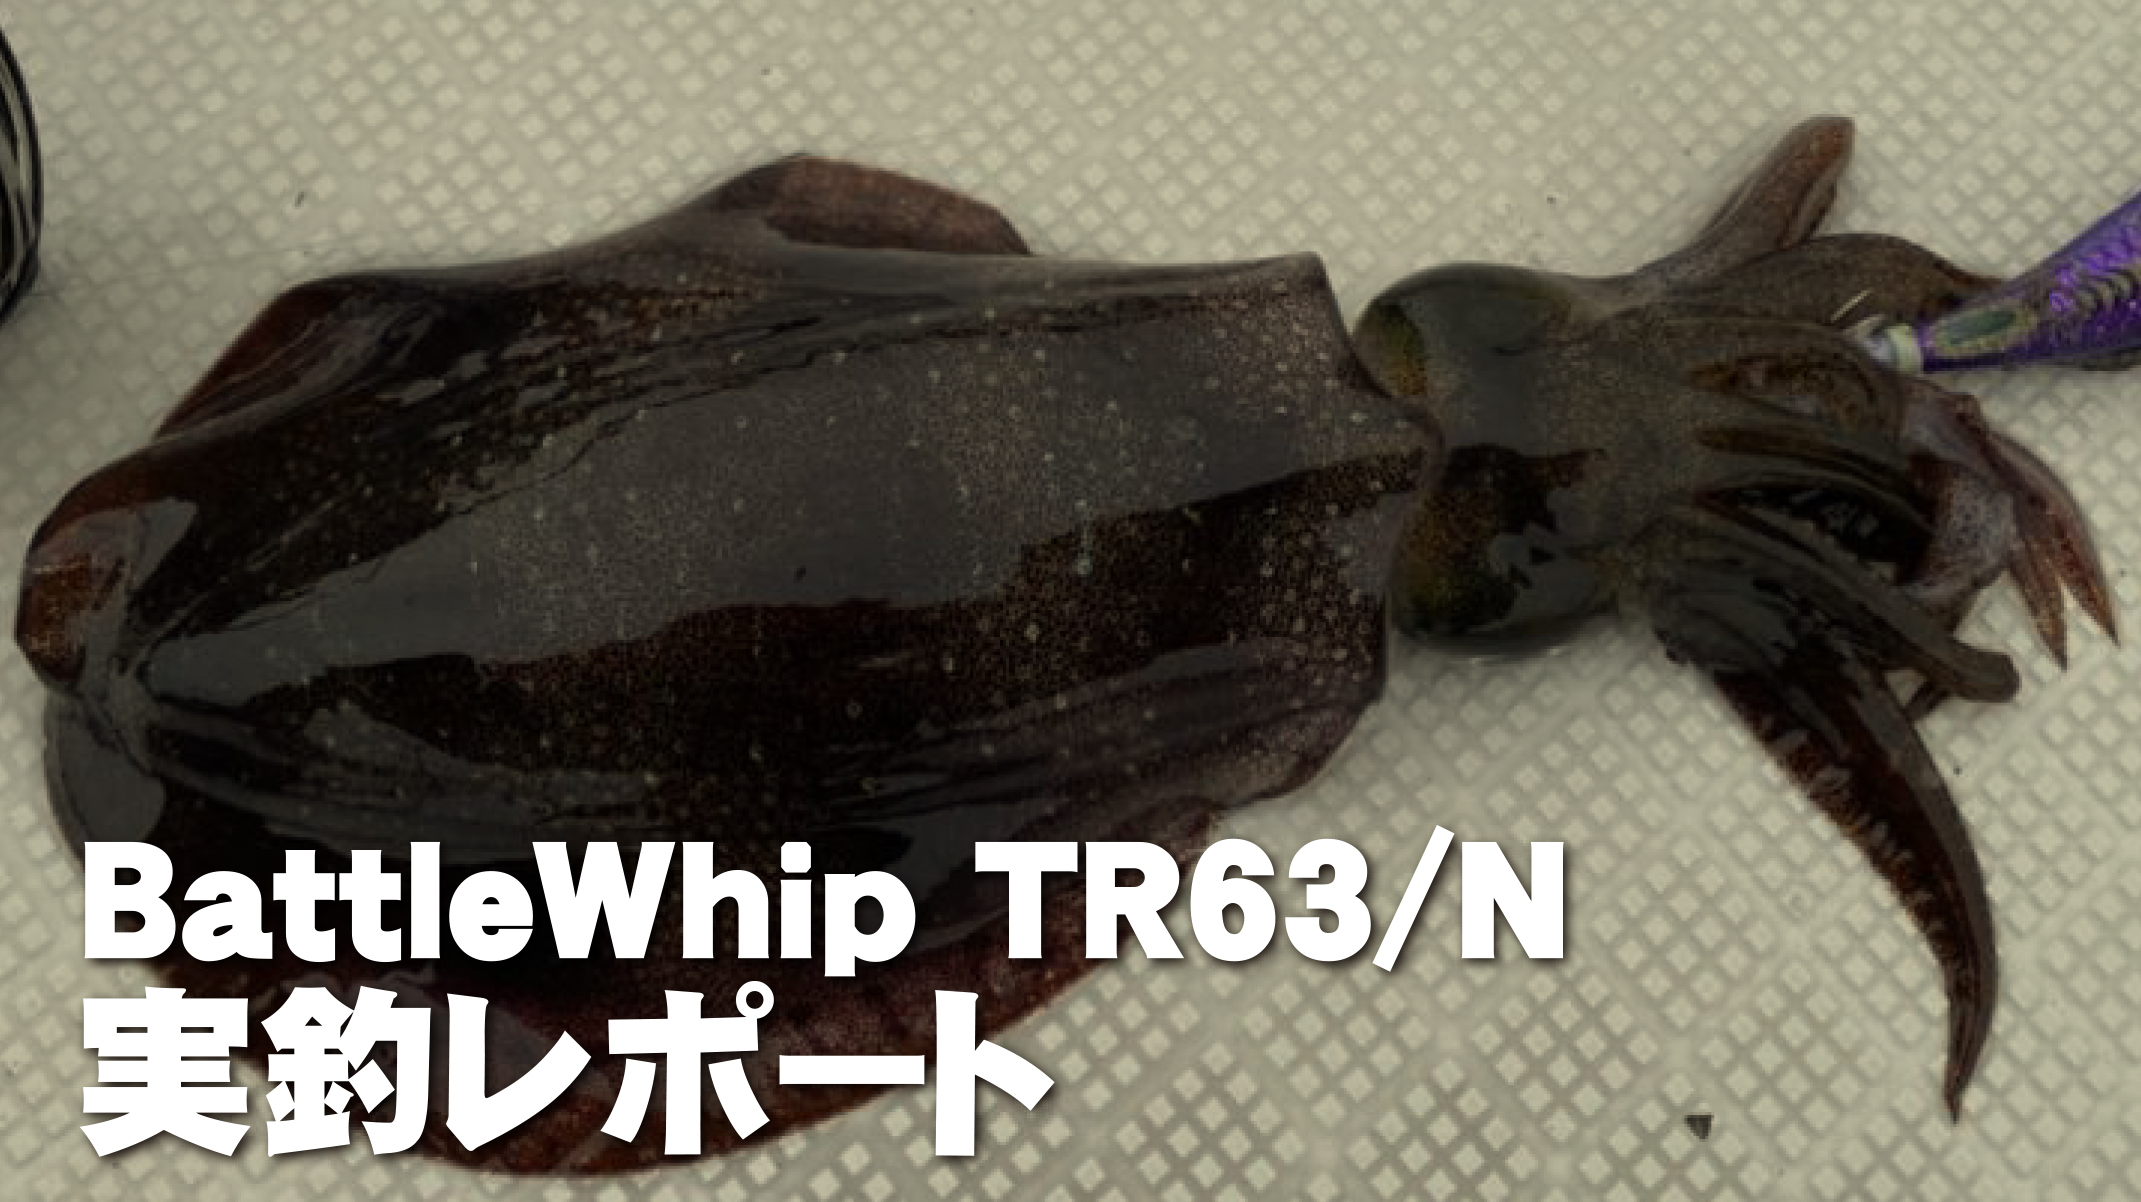 【フィールドスタッフレポート】『ティップラン調査へ』BattleWhip TR63/N